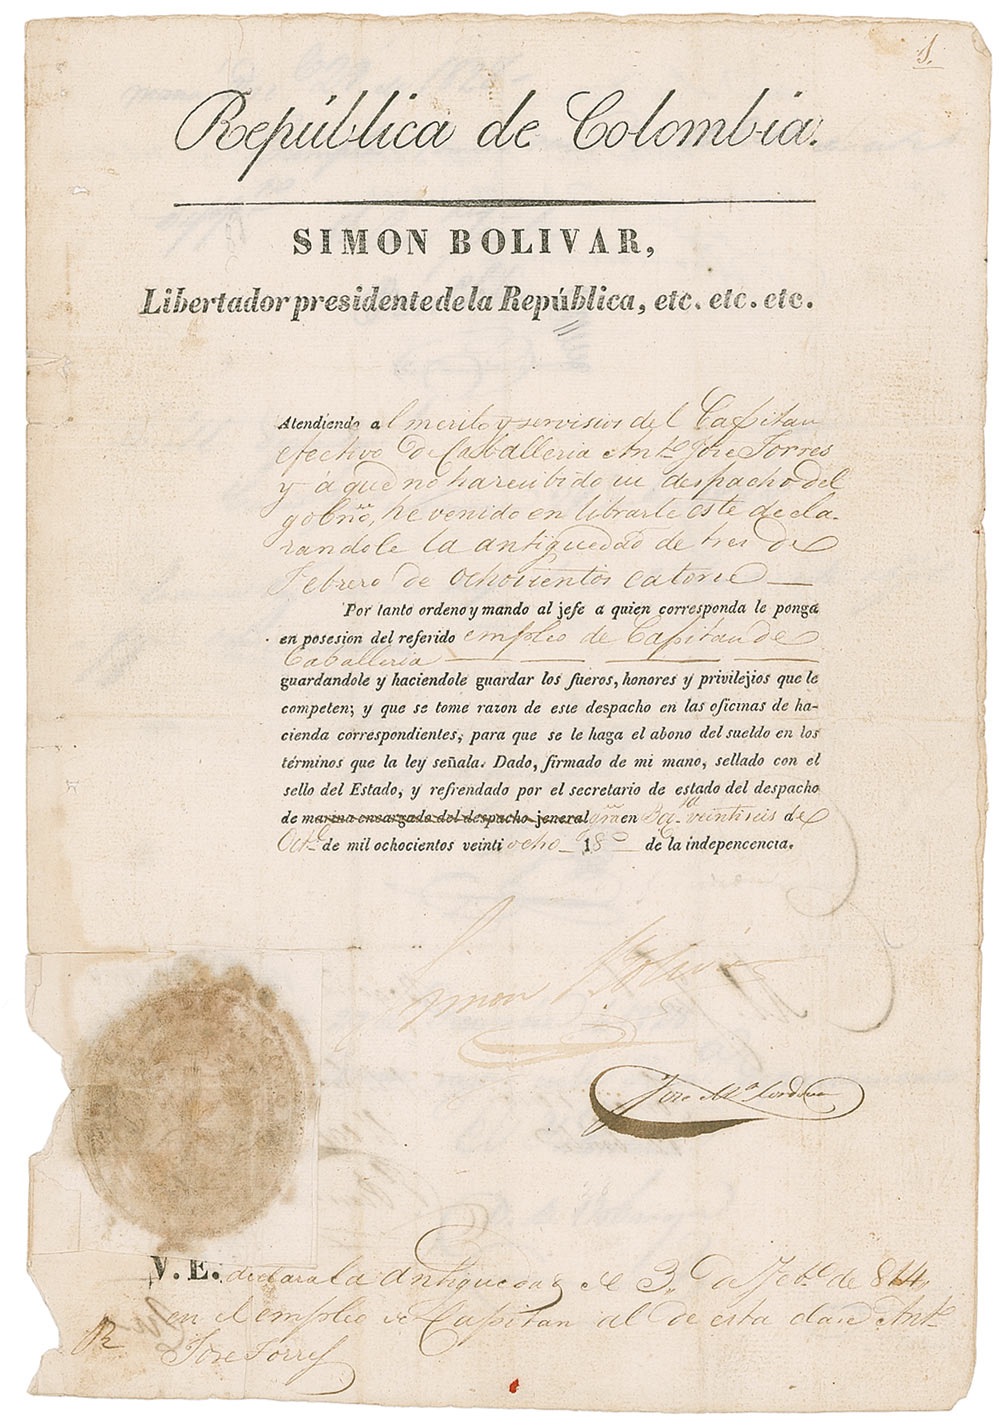 Lot #179 Simon Bolivar